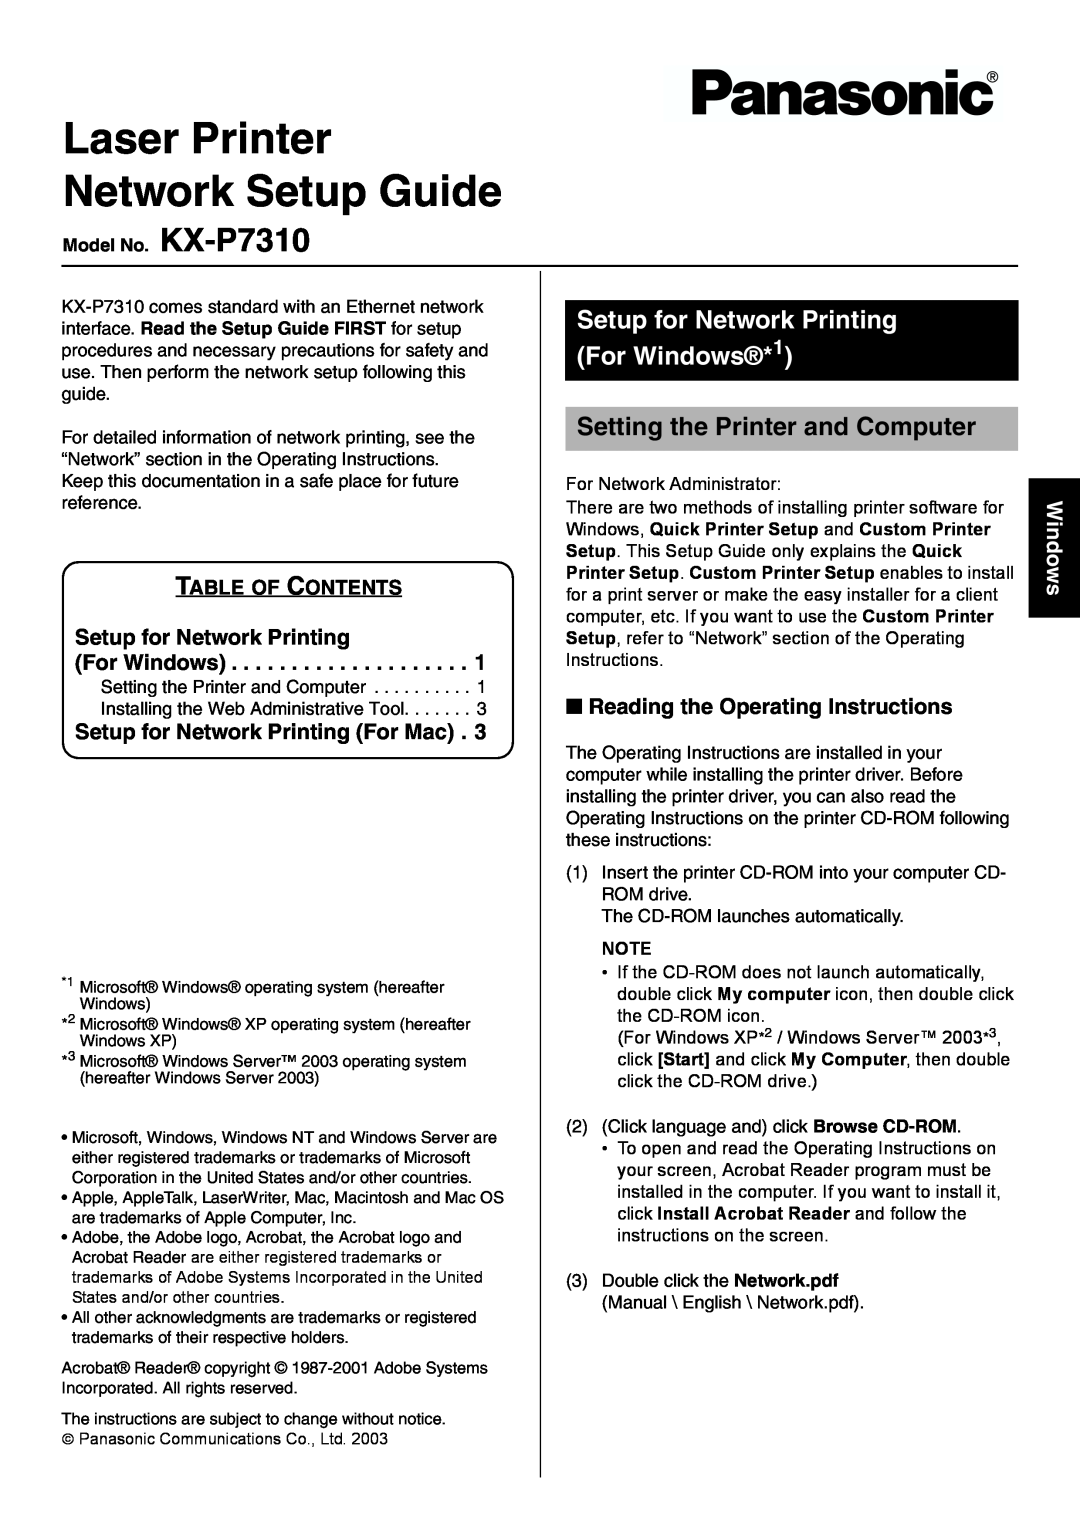 Panasonic KX-P7310 setup guide Setup for Network Printing For Windows*1, Setting the Printer and Computer 